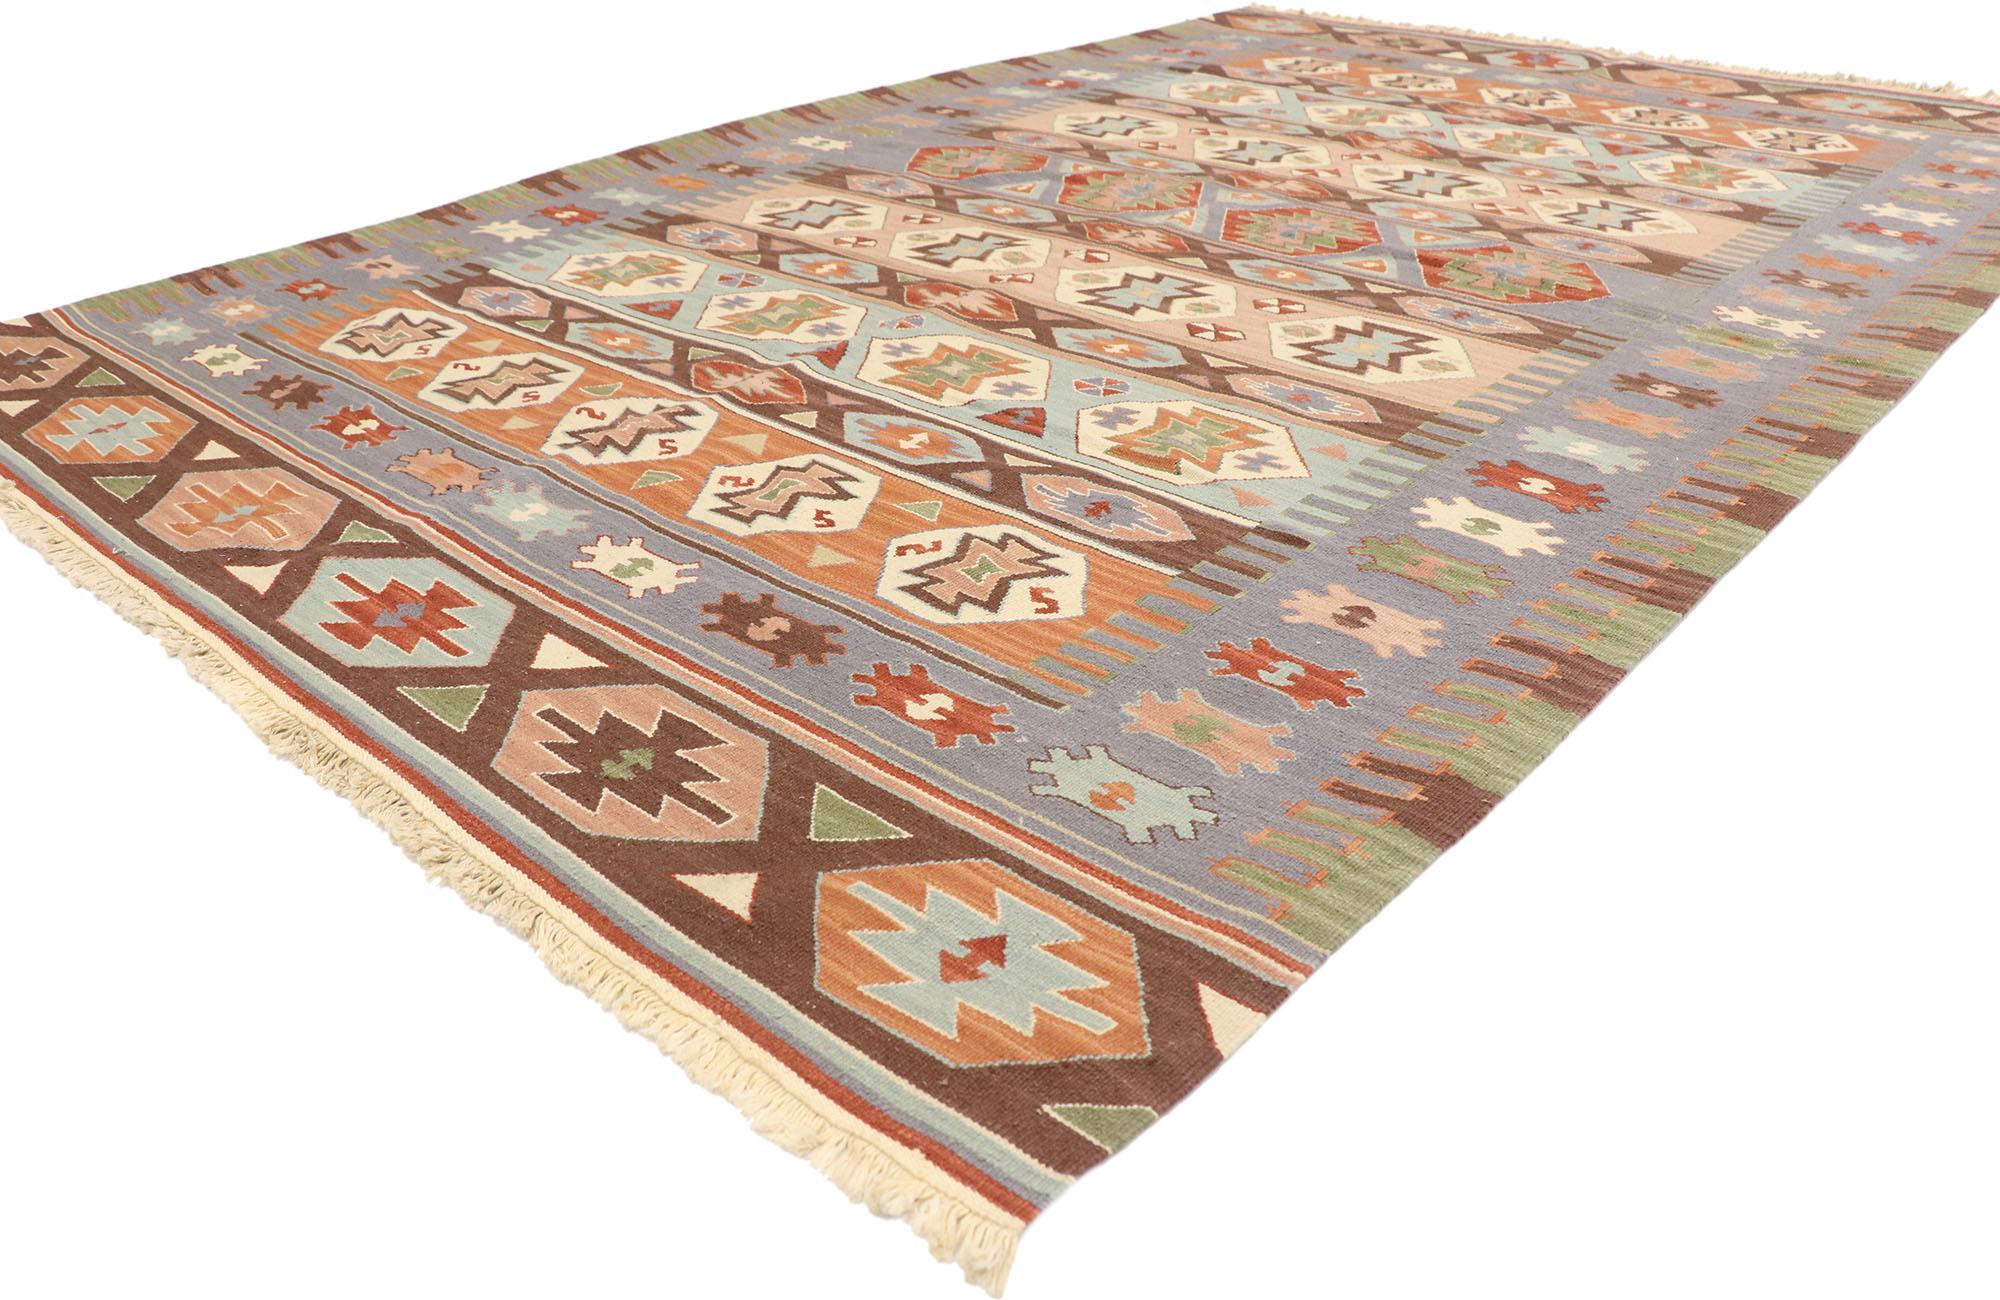 77931 Vintage Persian Shiraz Kilim Teppich mit Bohemian Tribal Stil 05'07 x 08'07. Voller winziger Details und einem kühnen, ausdrucksstarken Design, kombiniert mit kontrastreichen Farben und einem Stammesstil, ist dieser handgewebte, alte persische